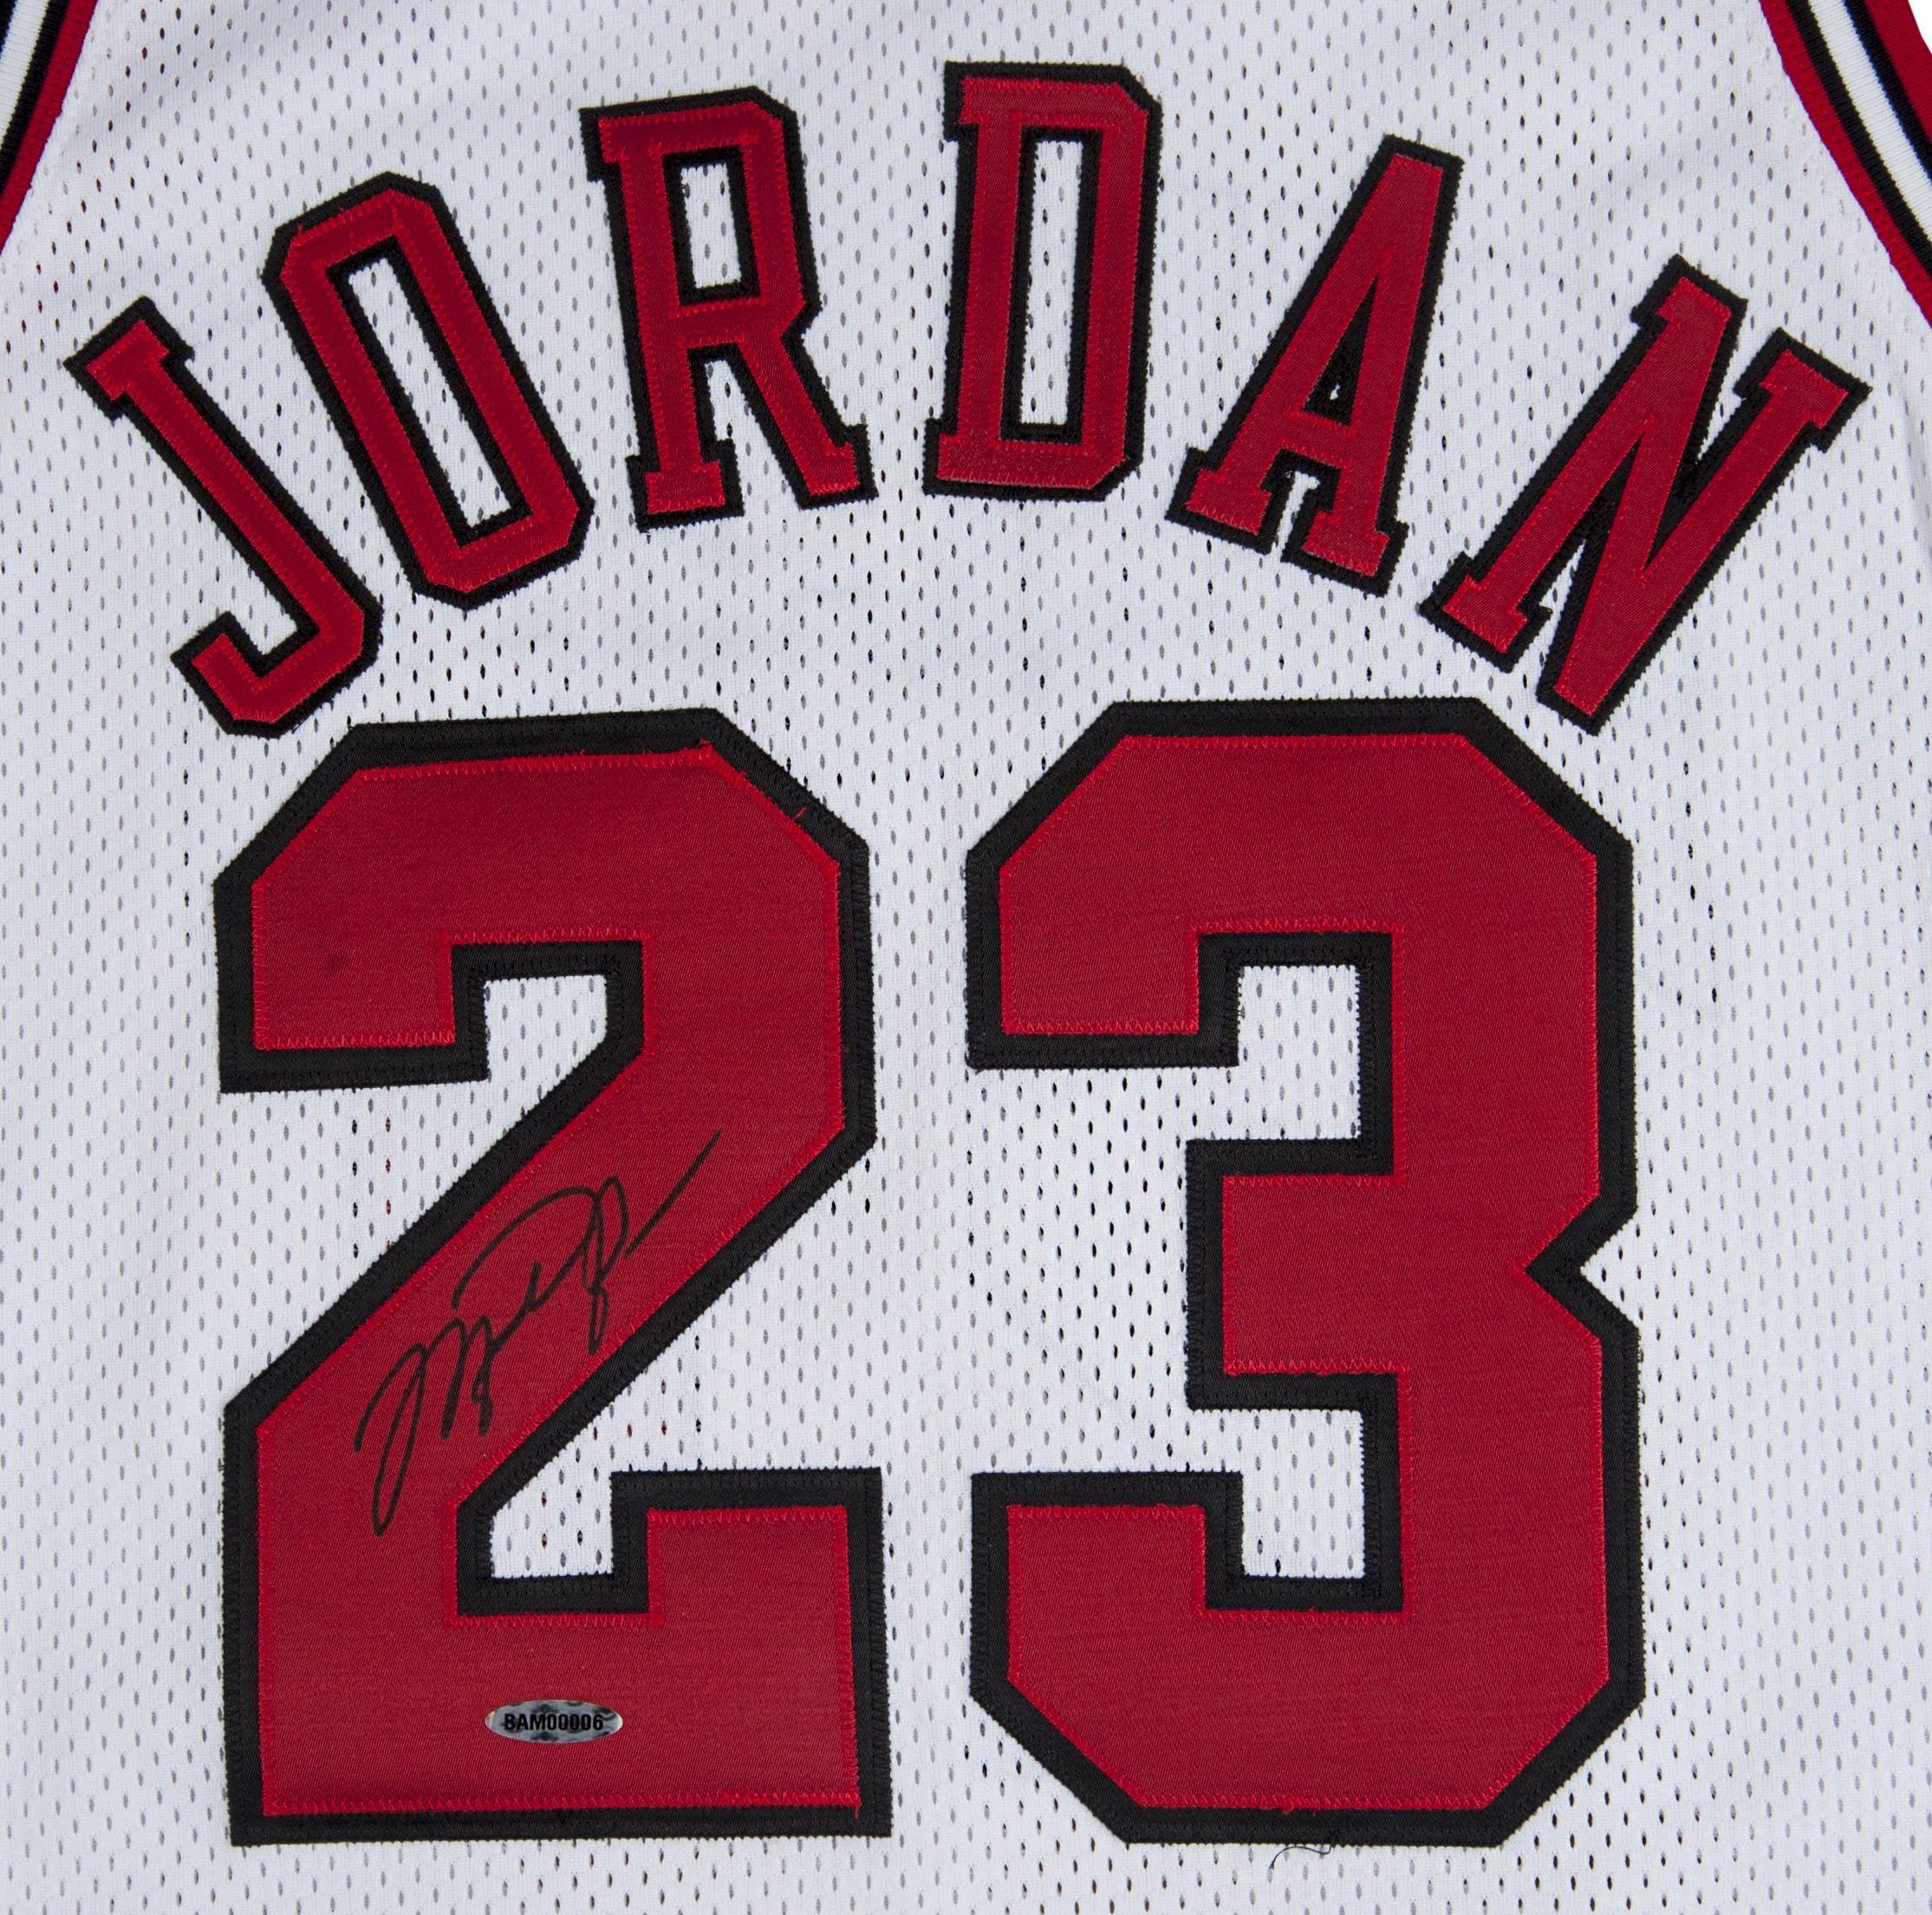 Michael Jordan 23 Wallpapers - Top Free Michael Jordan 23 Backgrounds ...